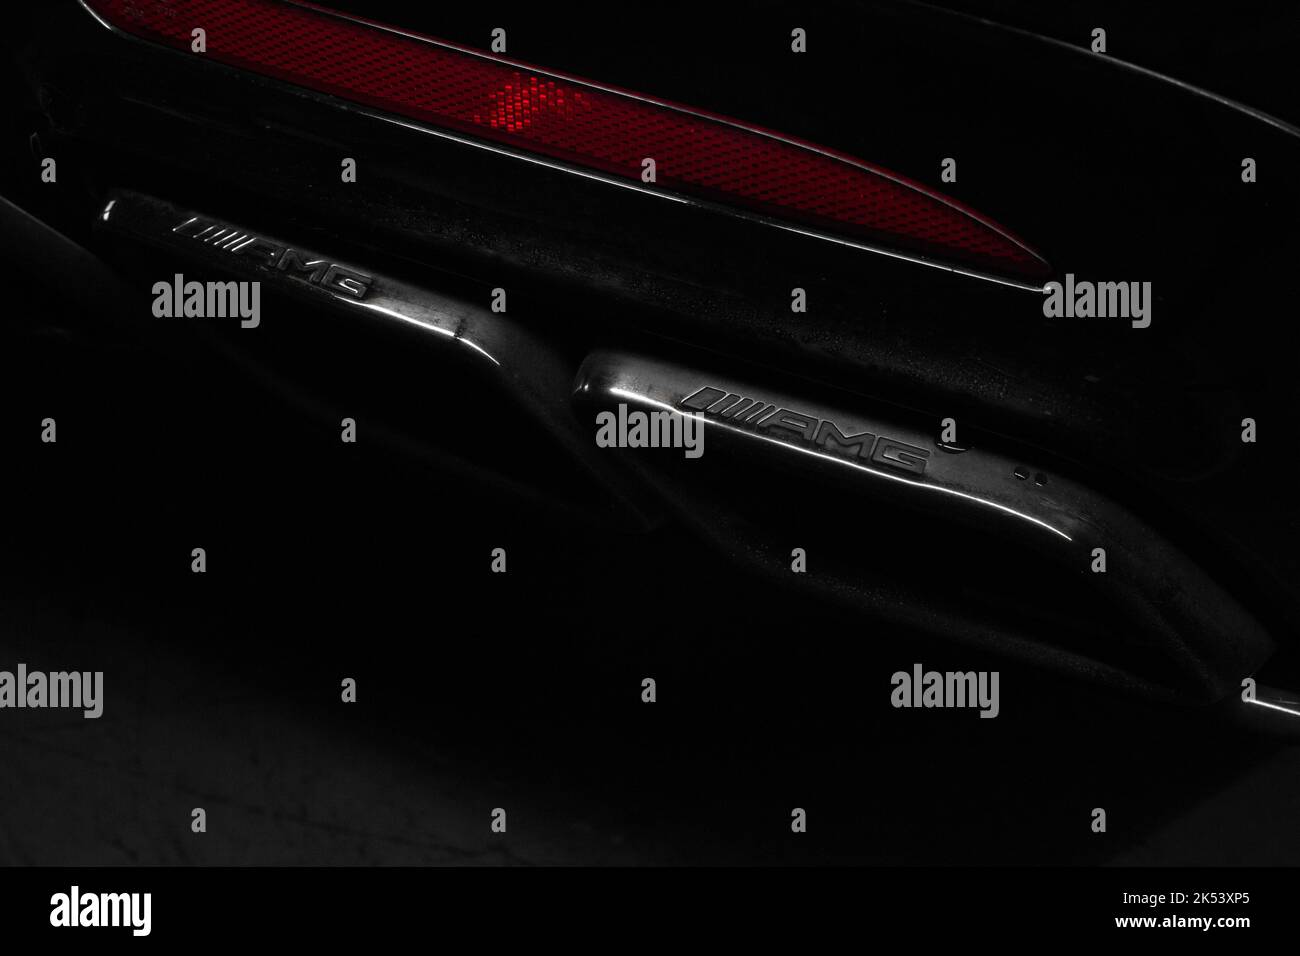 Le punte di scarico a marchio AMG Satin Black su Una berlina Mercedes Benz S63 AMG W222 nera 2020 Foto Stock